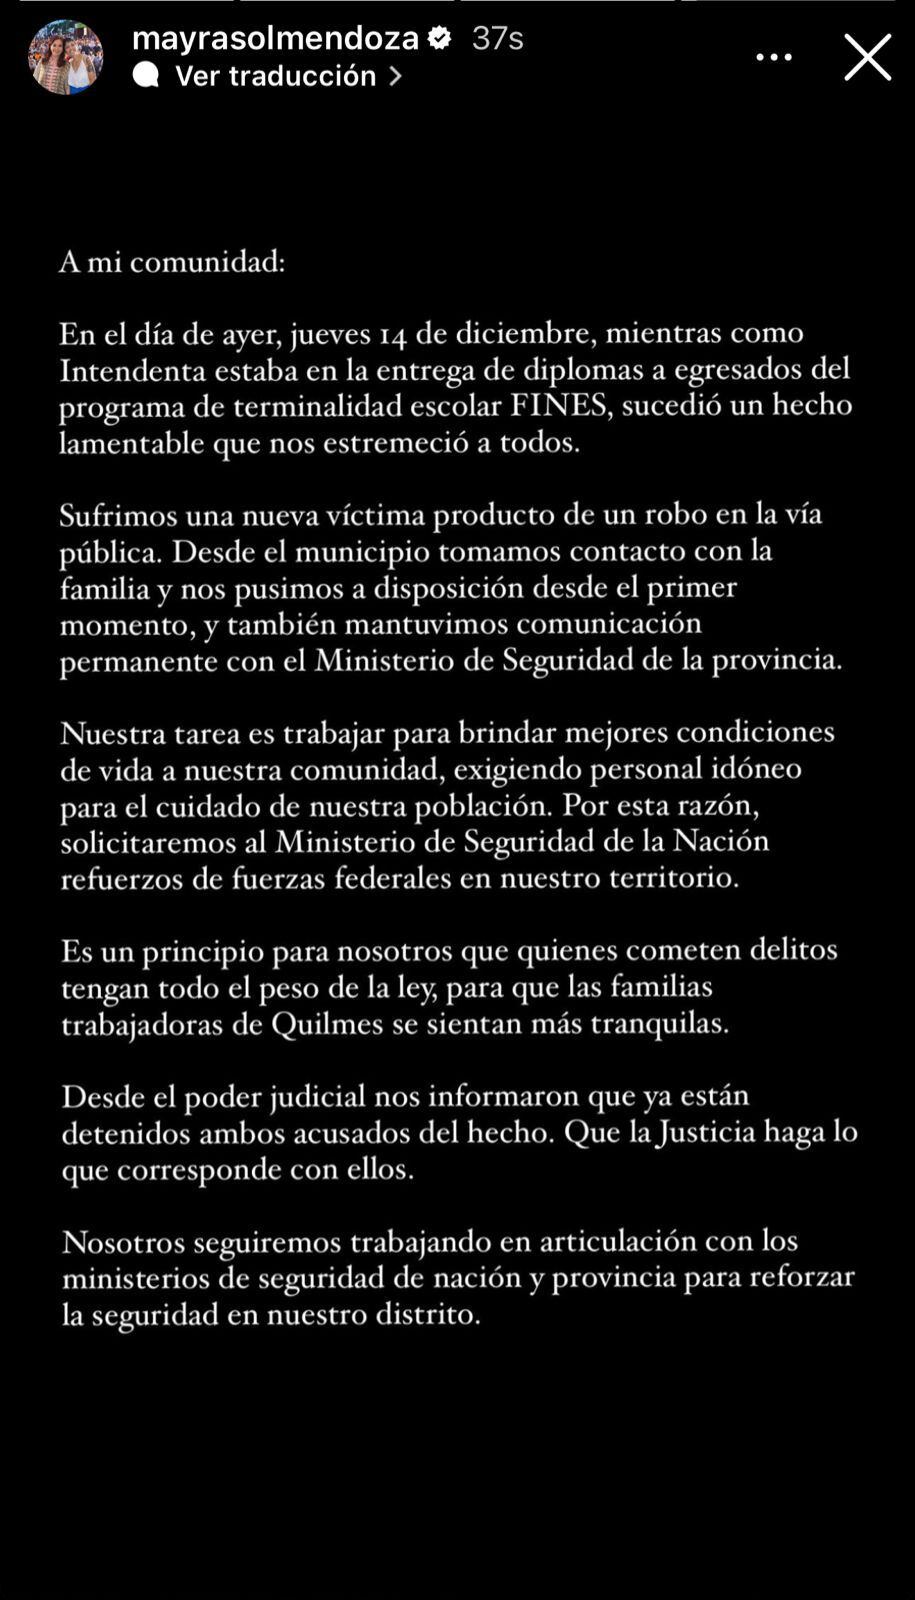 Comunicado de Mayra Mendoza, intendenta de Quilmes, tras el asesinato a un hombre al que le robaron la moto en su distrito